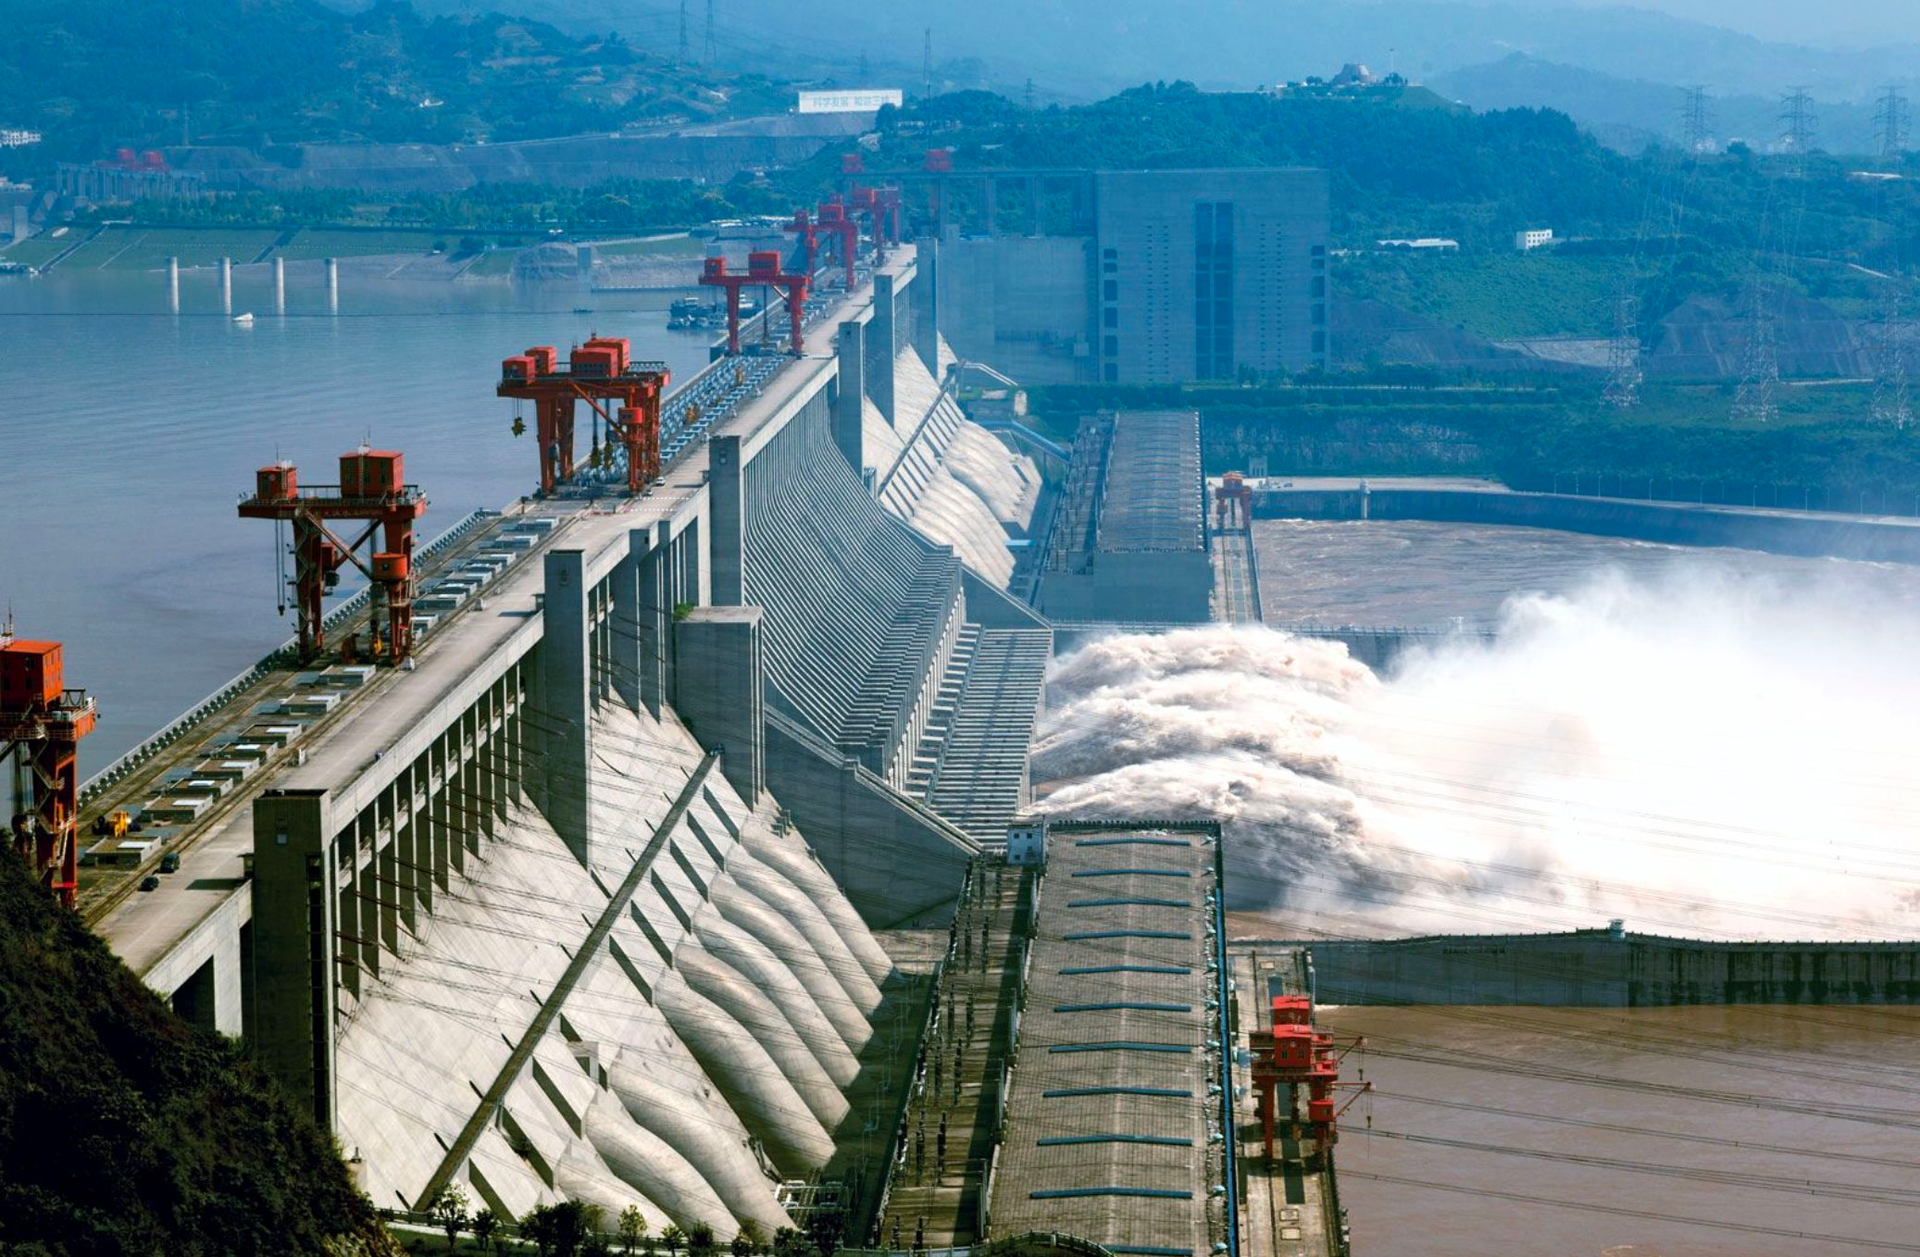 Quốc gia cạnh Việt Nam sở hữu nguồn thuỷ điện lớn nhất thế giới chưa được khai thác: Đủ nguồn cung cho hơn 400.000 hộ, chuẩn bị xây con đập lớn nhất thế giới - Ảnh 1.